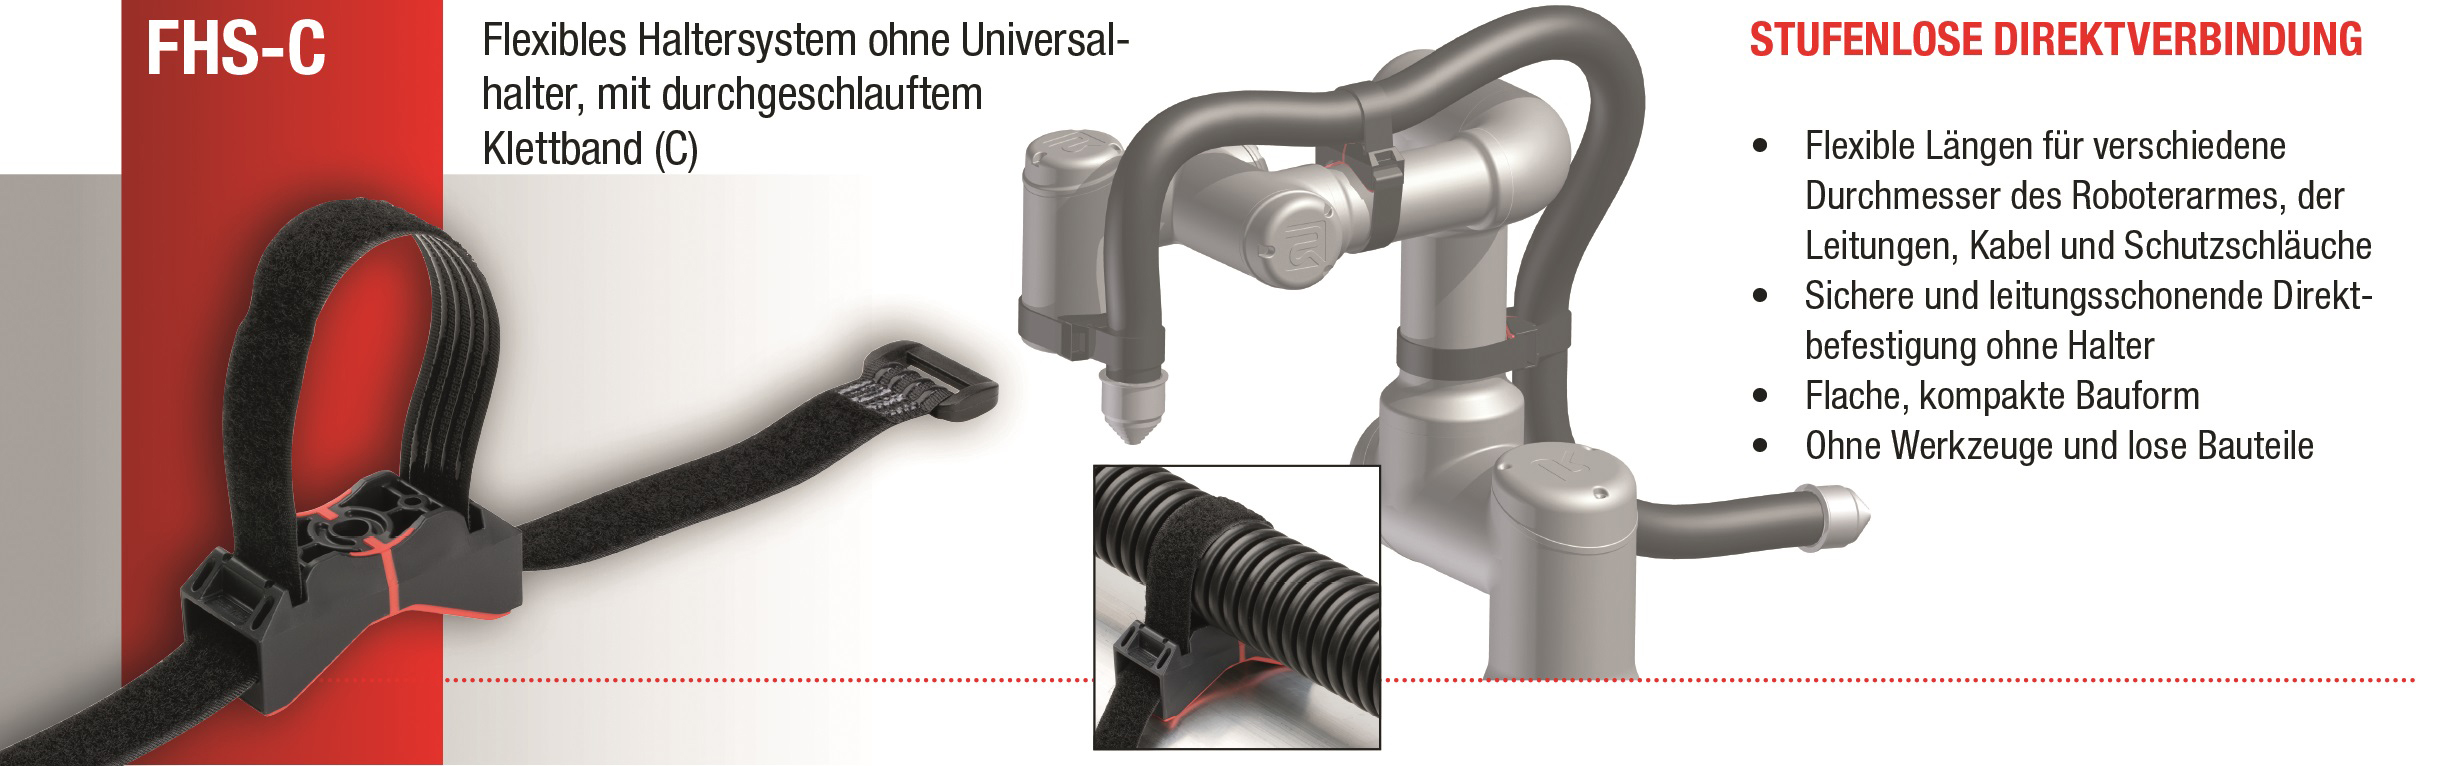 Abb.5: Flexibles Haltersystem ohne Universalhalter, mit durchgeschlauftem Klettband (FHS-C)